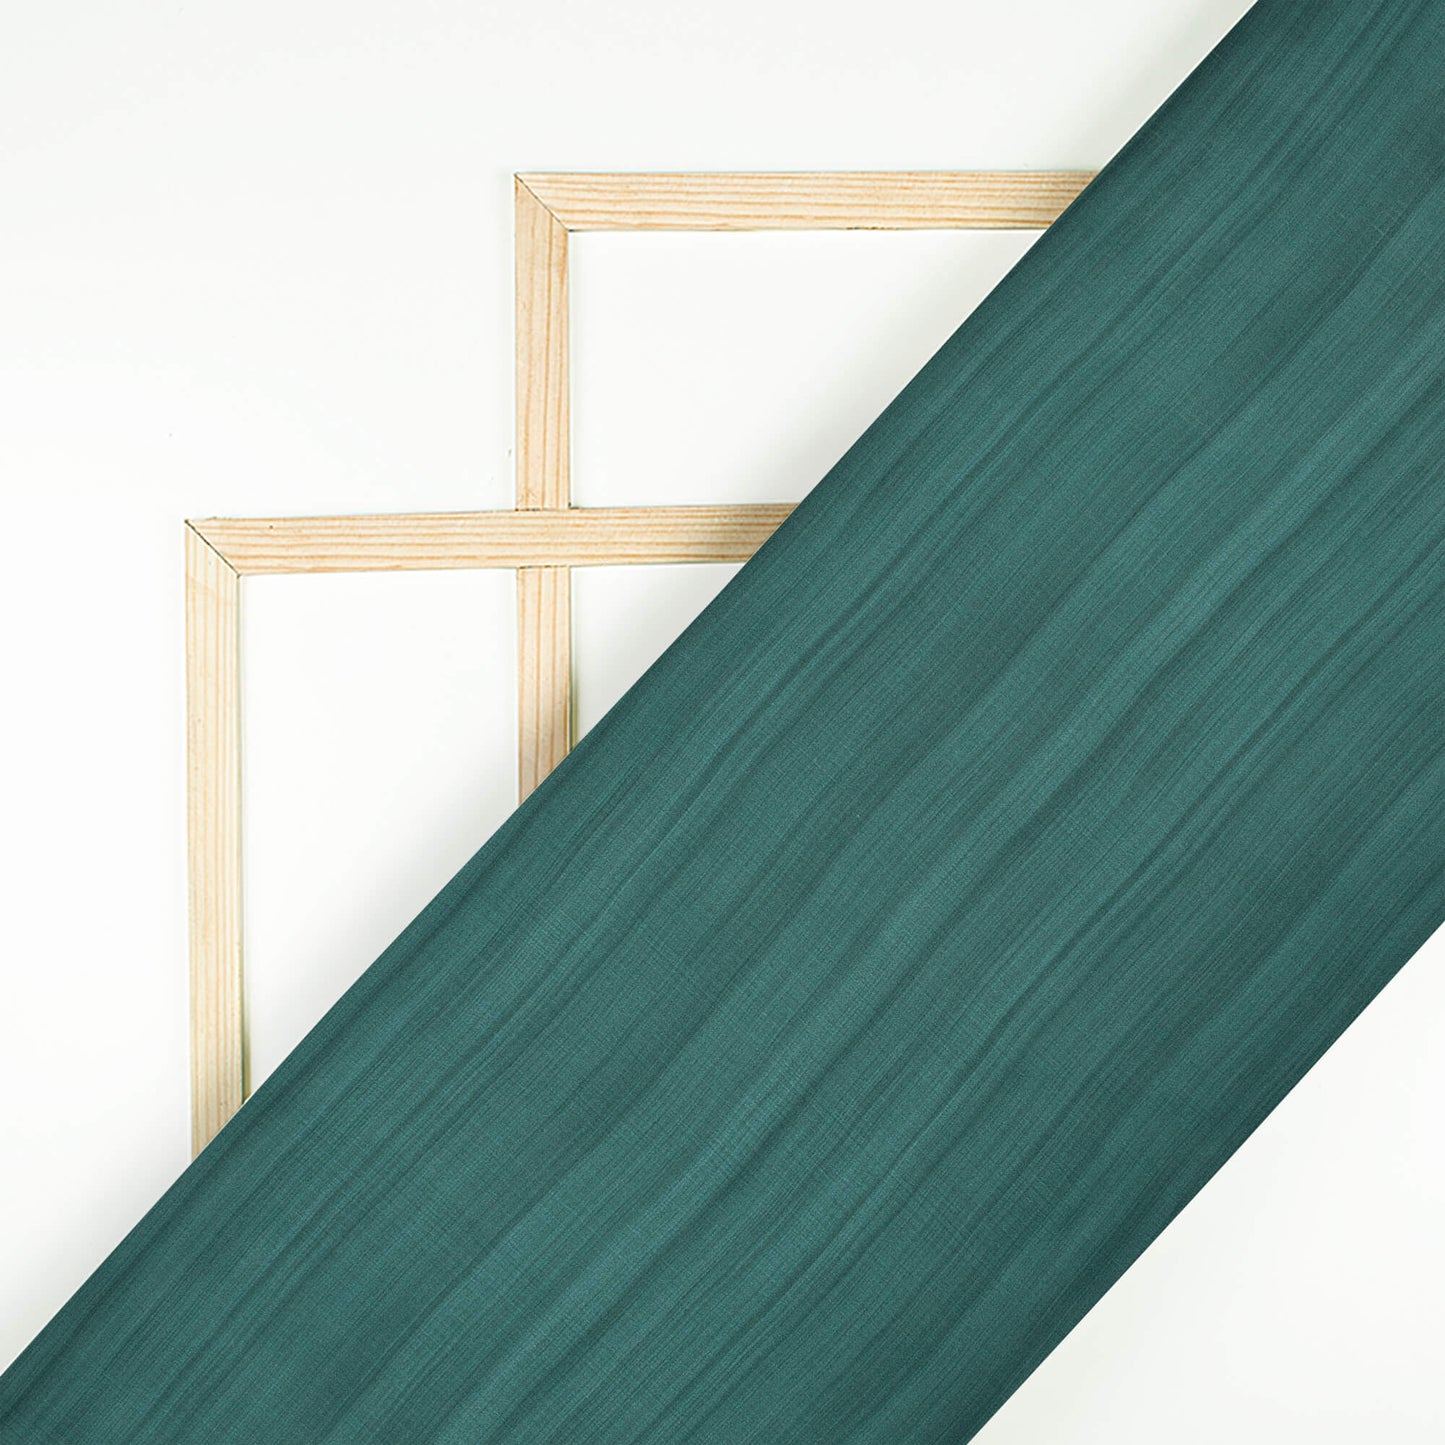 Pine Green Texture Pattern Digital Print Chiffon Satin Fabric